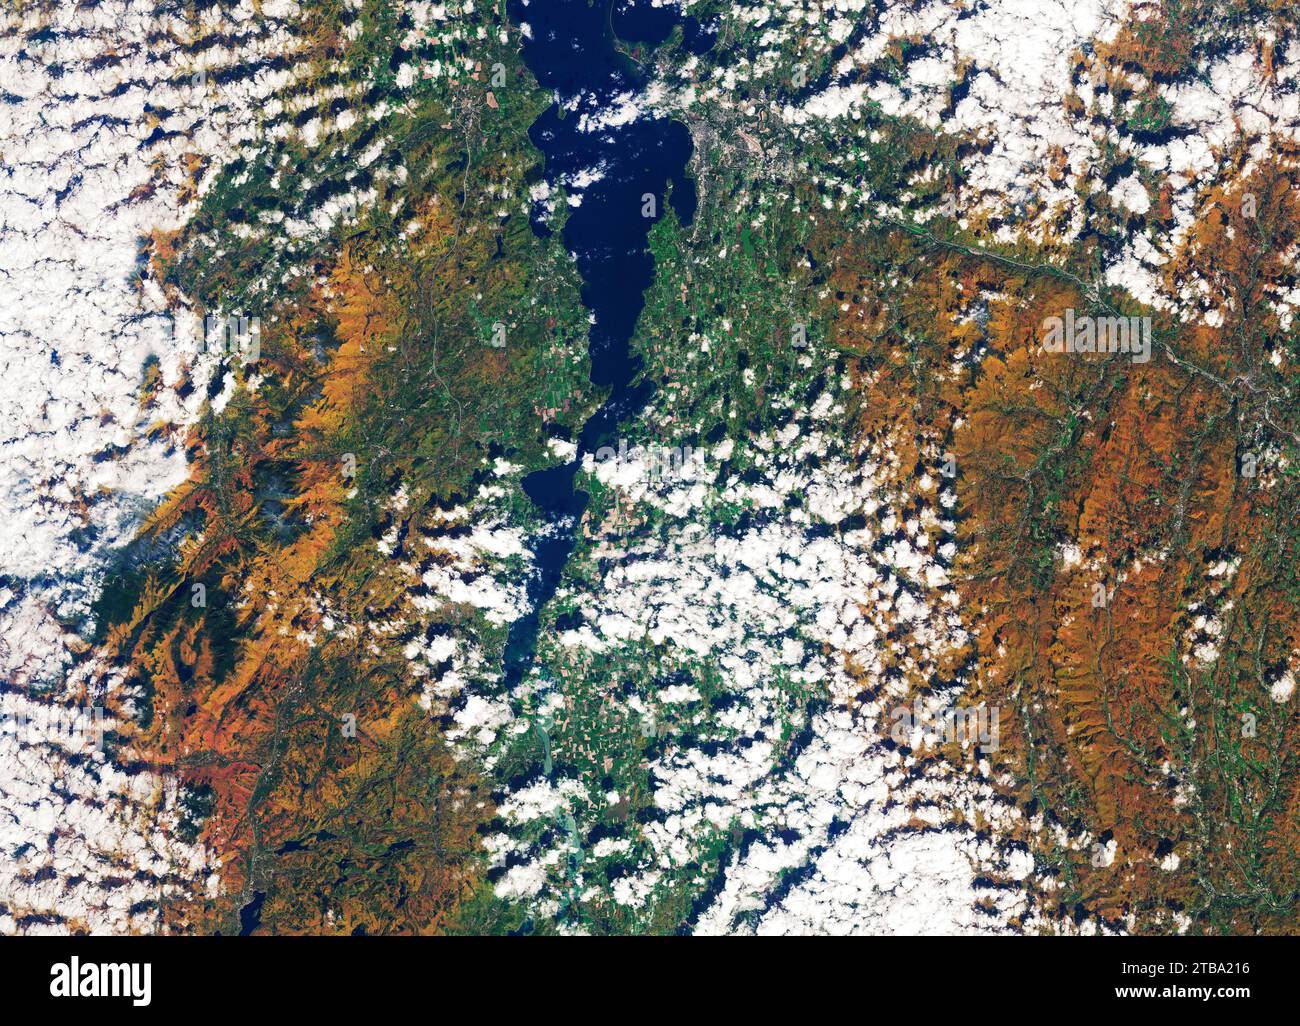 Vue satellite du feuillage coloré d'automne autour d'Elizabethtown et des montagnes Adirondack dans le nord-est de New York. Banque D'Images